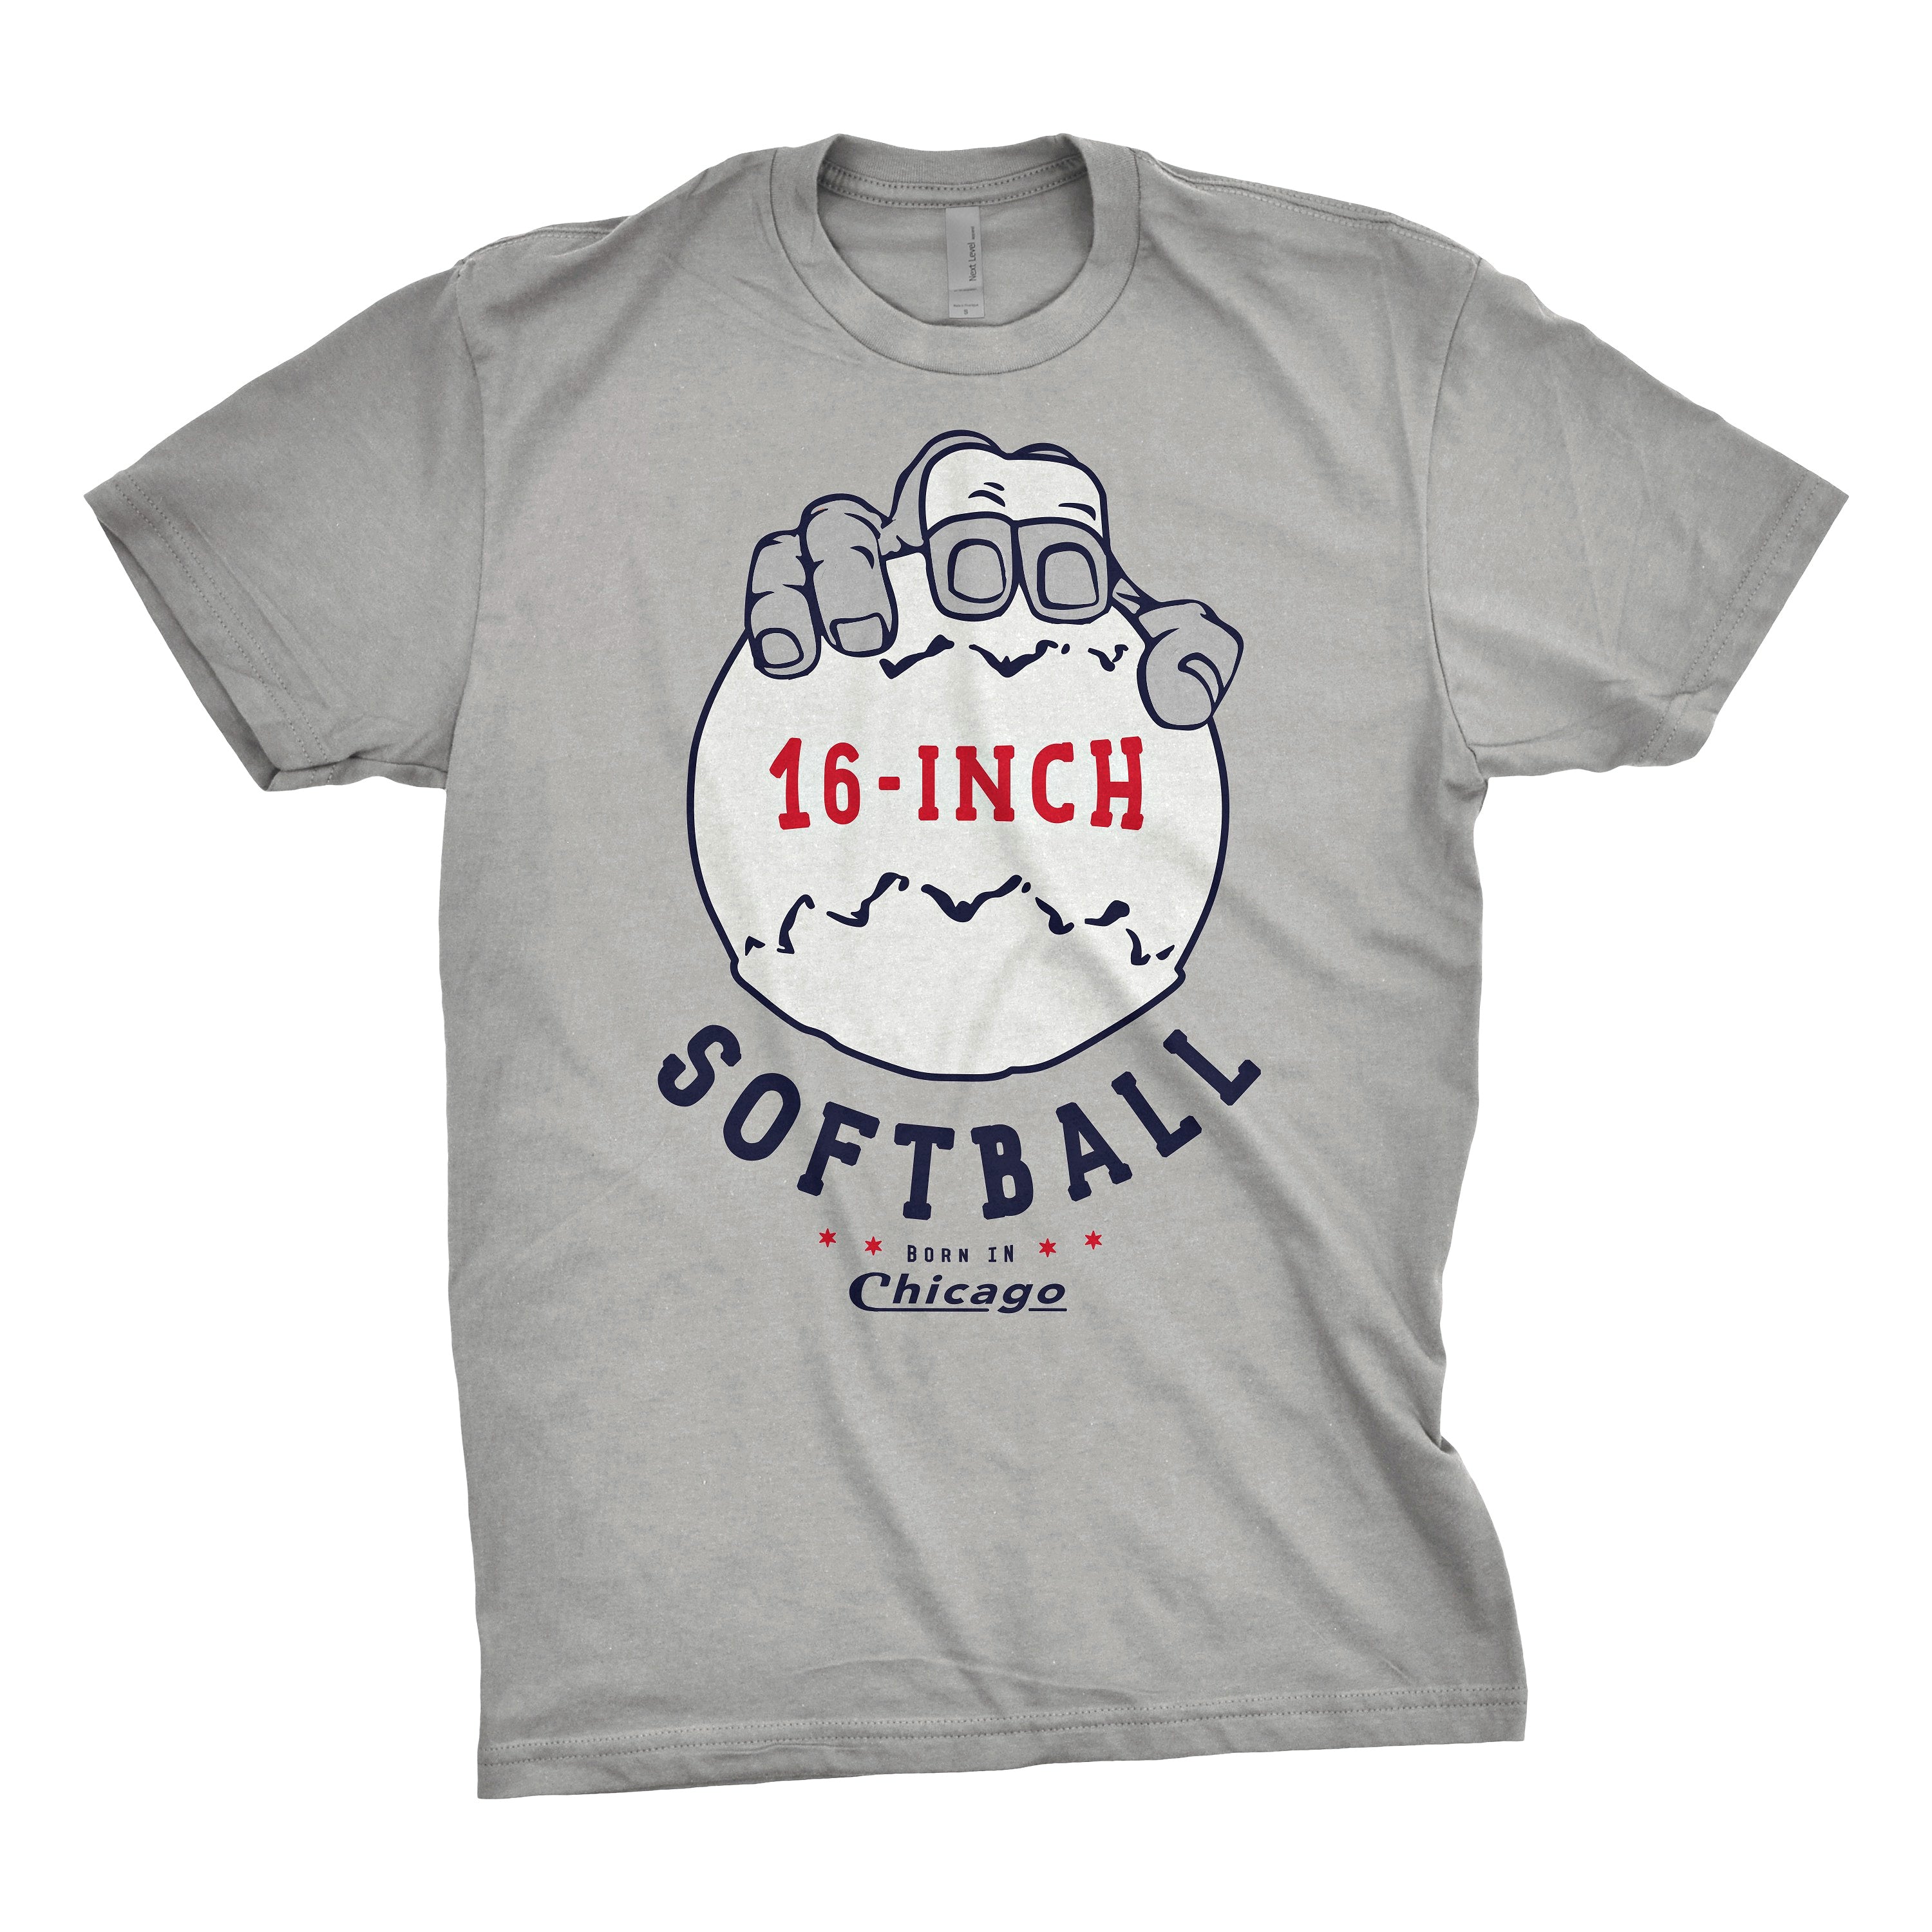 Chicago 16 inch softball t-shirt